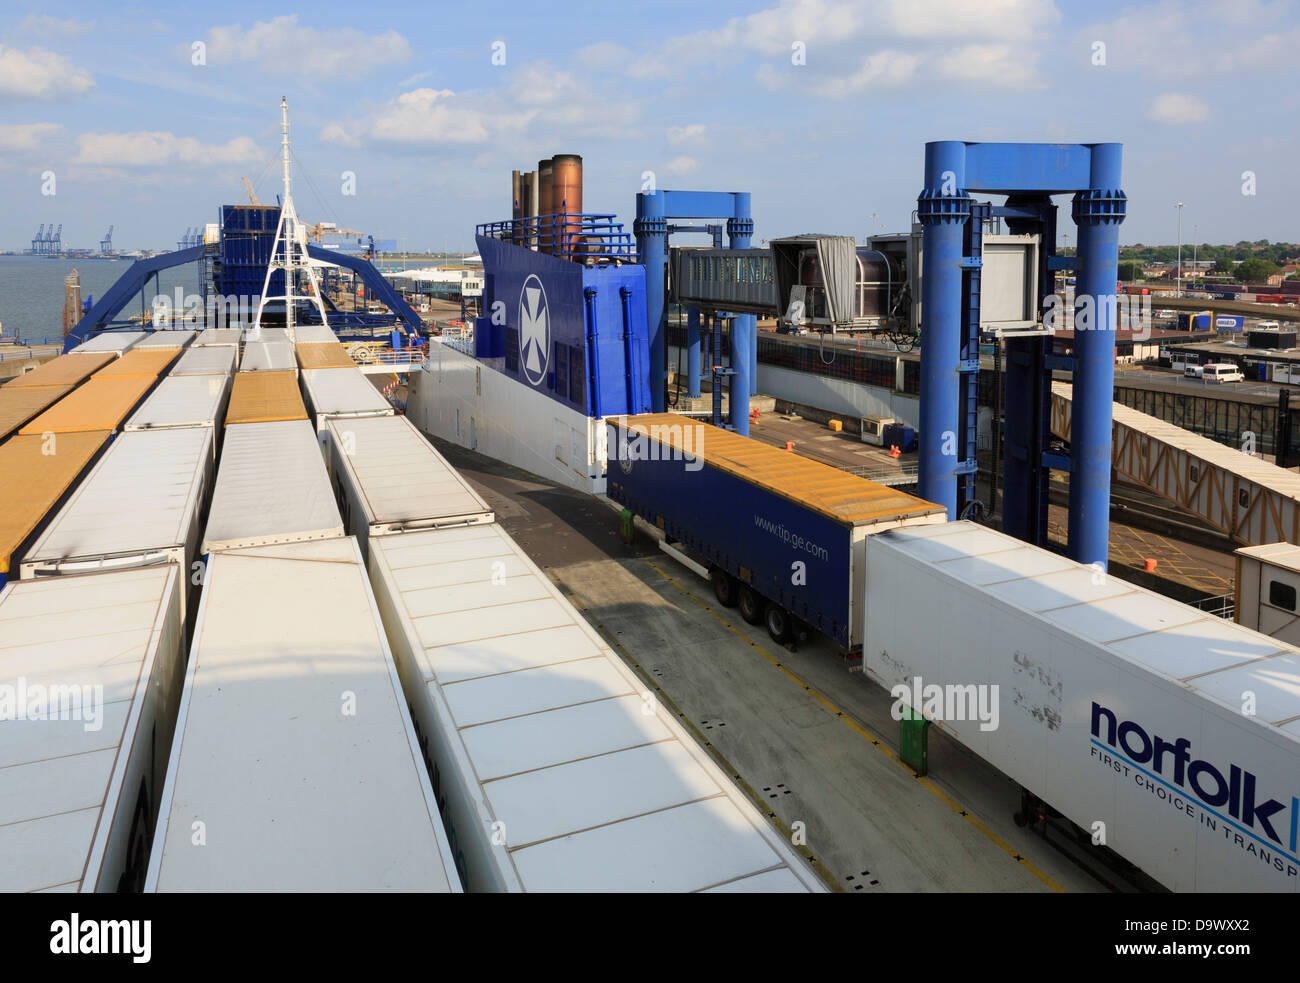 Container Lkw auf fähre DFDS Seaways Sirena für Dänemark angedockt an Parkeston Quay Harwich International Port Essex England Großbritannien Stockfoto